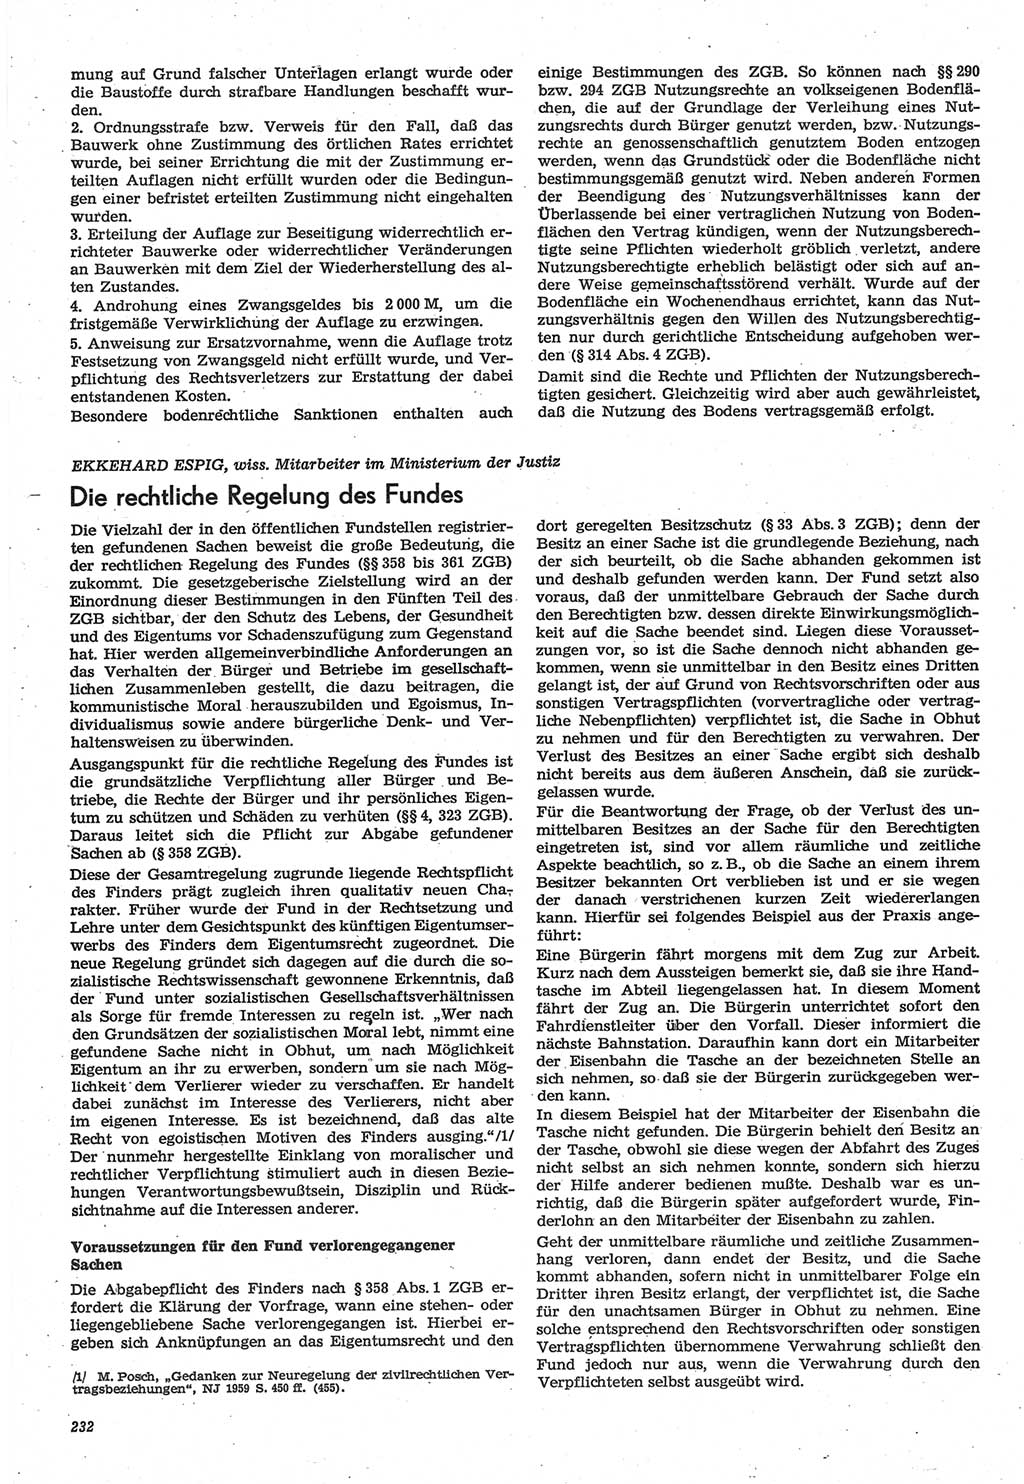 Neue Justiz (NJ), Zeitschrift für Recht und Rechtswissenschaft-Zeitschrift, sozialistisches Recht und Gesetzlichkeit, 31. Jahrgang 1977, Seite 232 (NJ DDR 1977, S. 232)